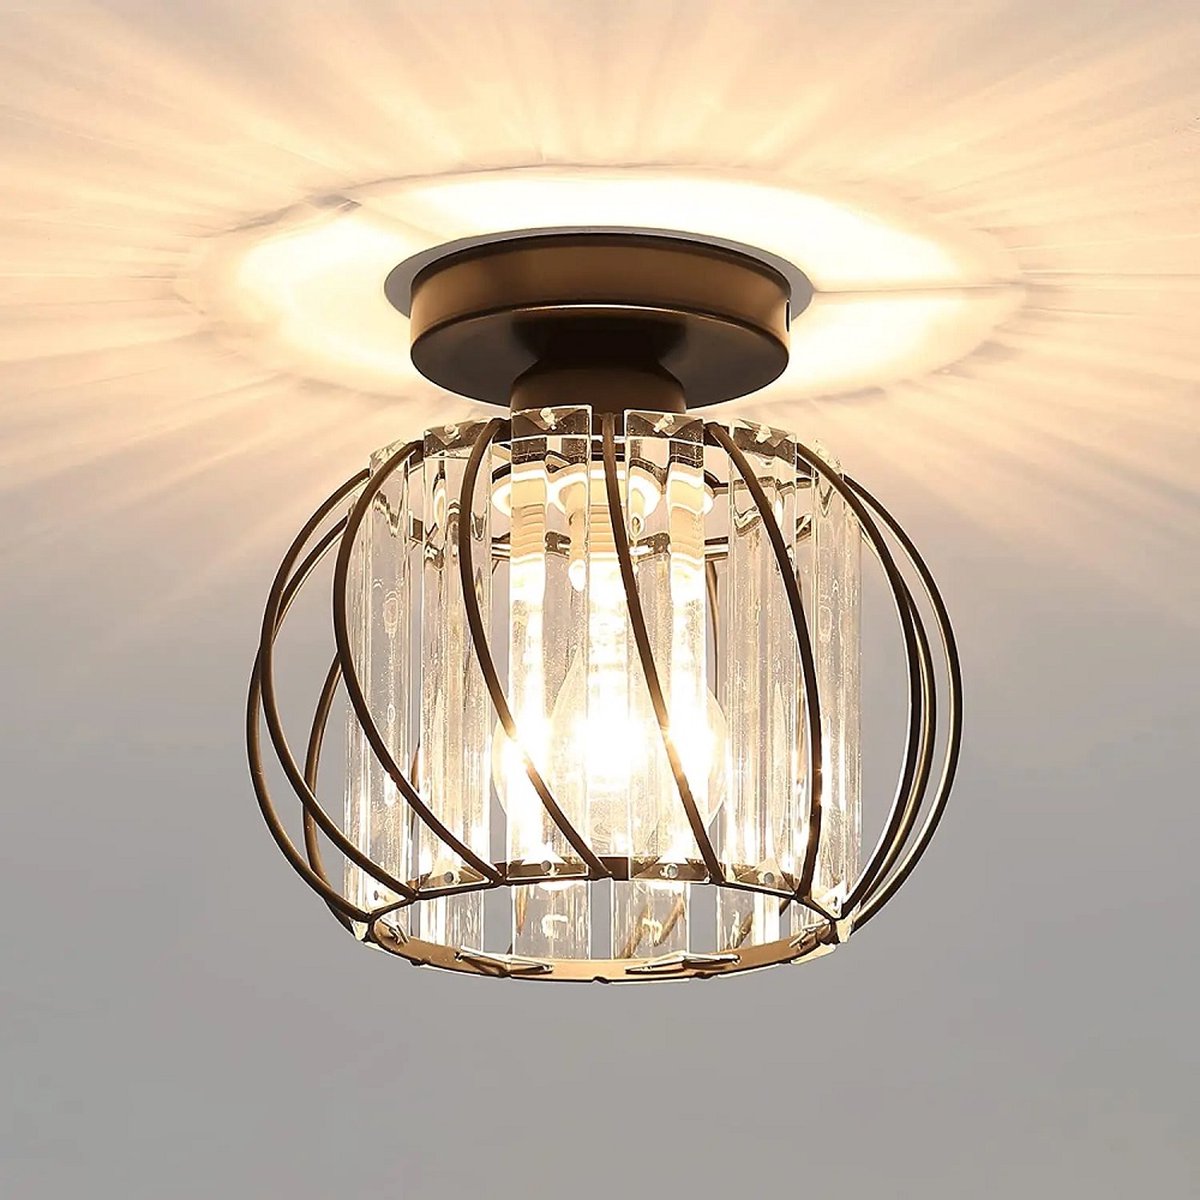 THA Plafondlamp - Verlichting - Gangpad - Lamp - LED Rond Kristallen - Gangpad of Hal Lamp - Plafonnière - 18 cm - Rond - Zwart - E27